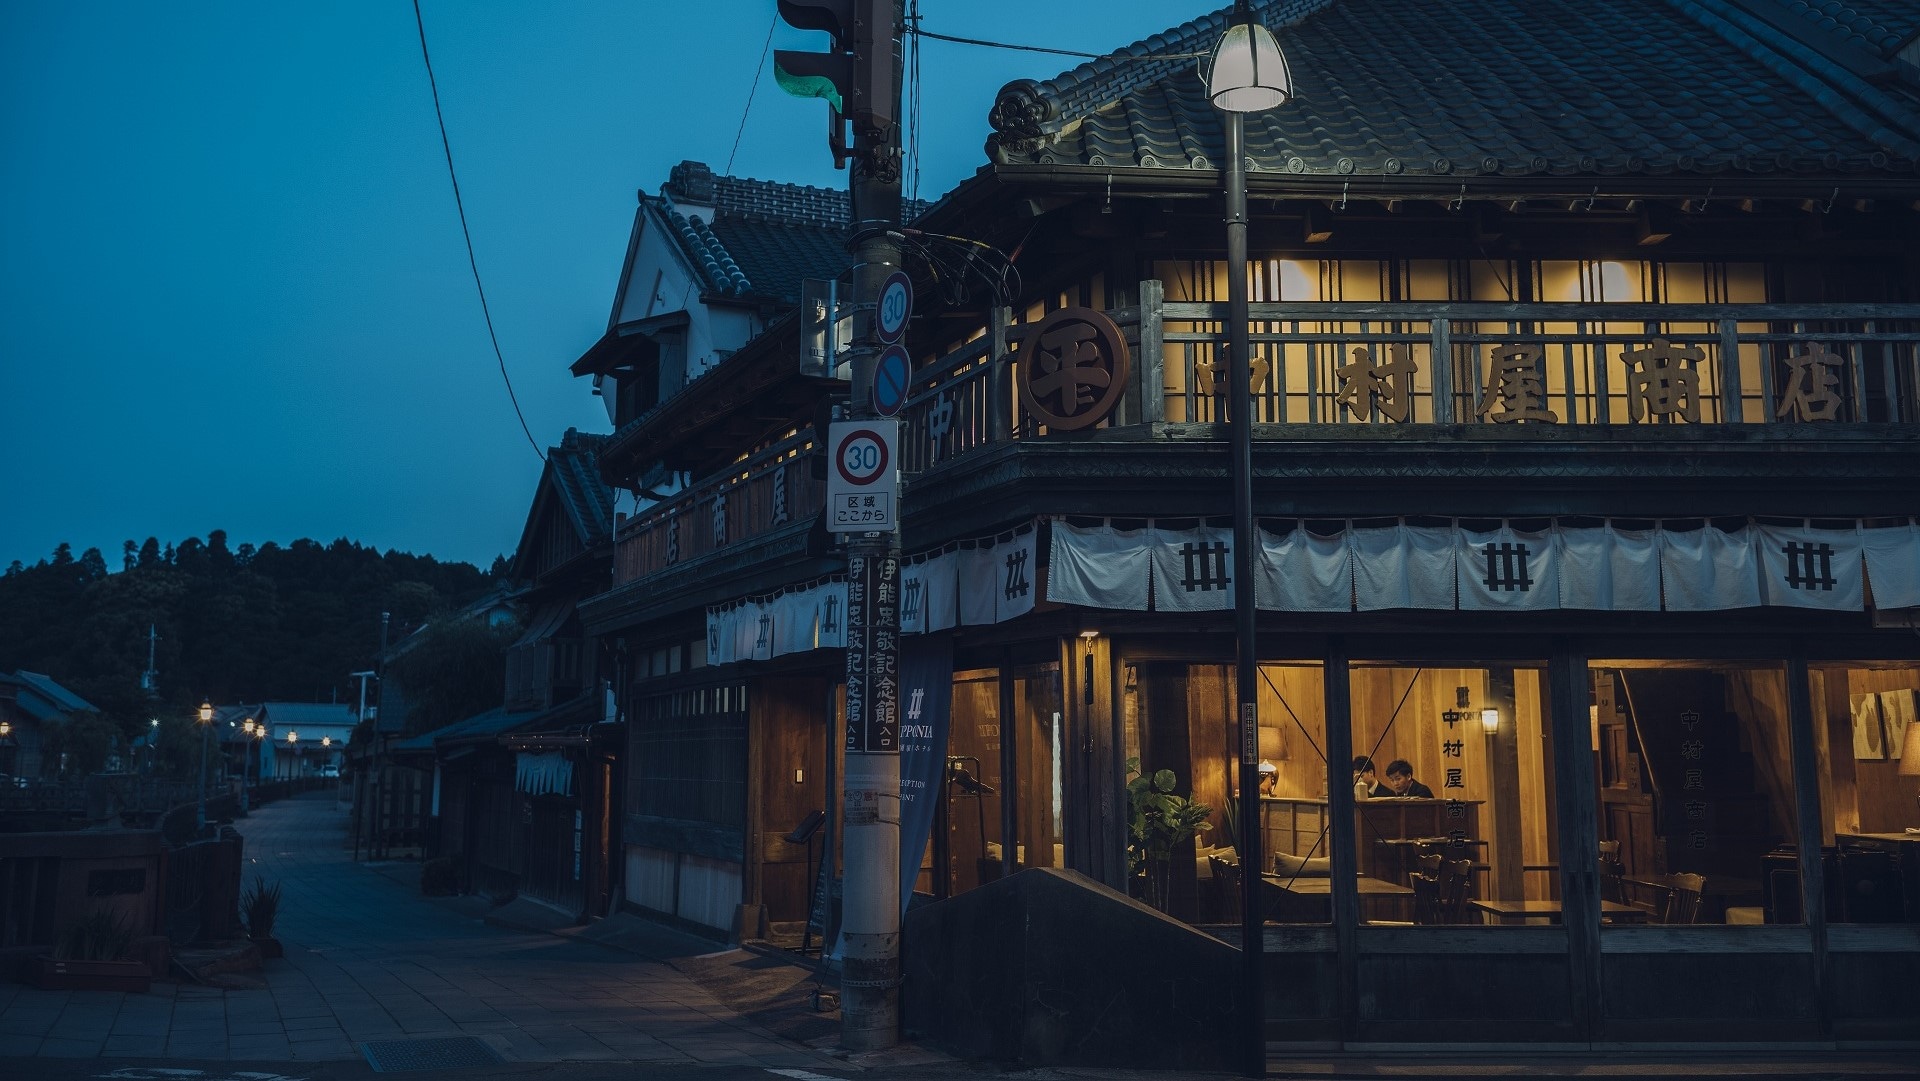 [Eksterior] Di lanskap kota yang berlanjut sejak zaman Edo, gedung-gedung tua masih hidup.